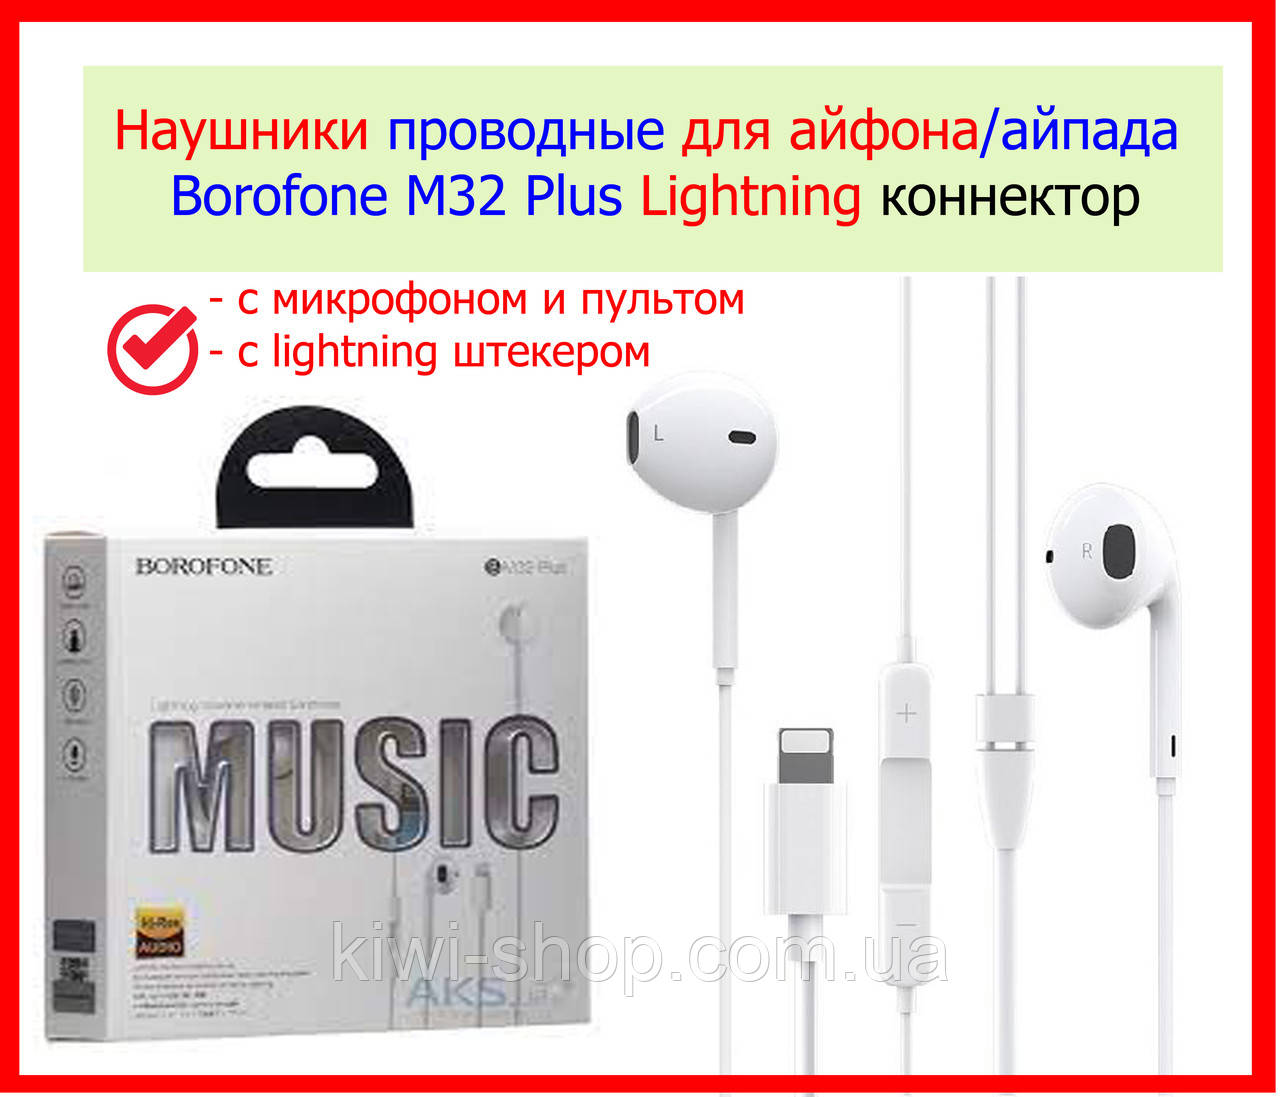 Дротові навушники для айфона Borofone M32 Plus Lightning, гарнітура для iPhone 5/6/7/7+/8/8+X/XS/XR/11/12